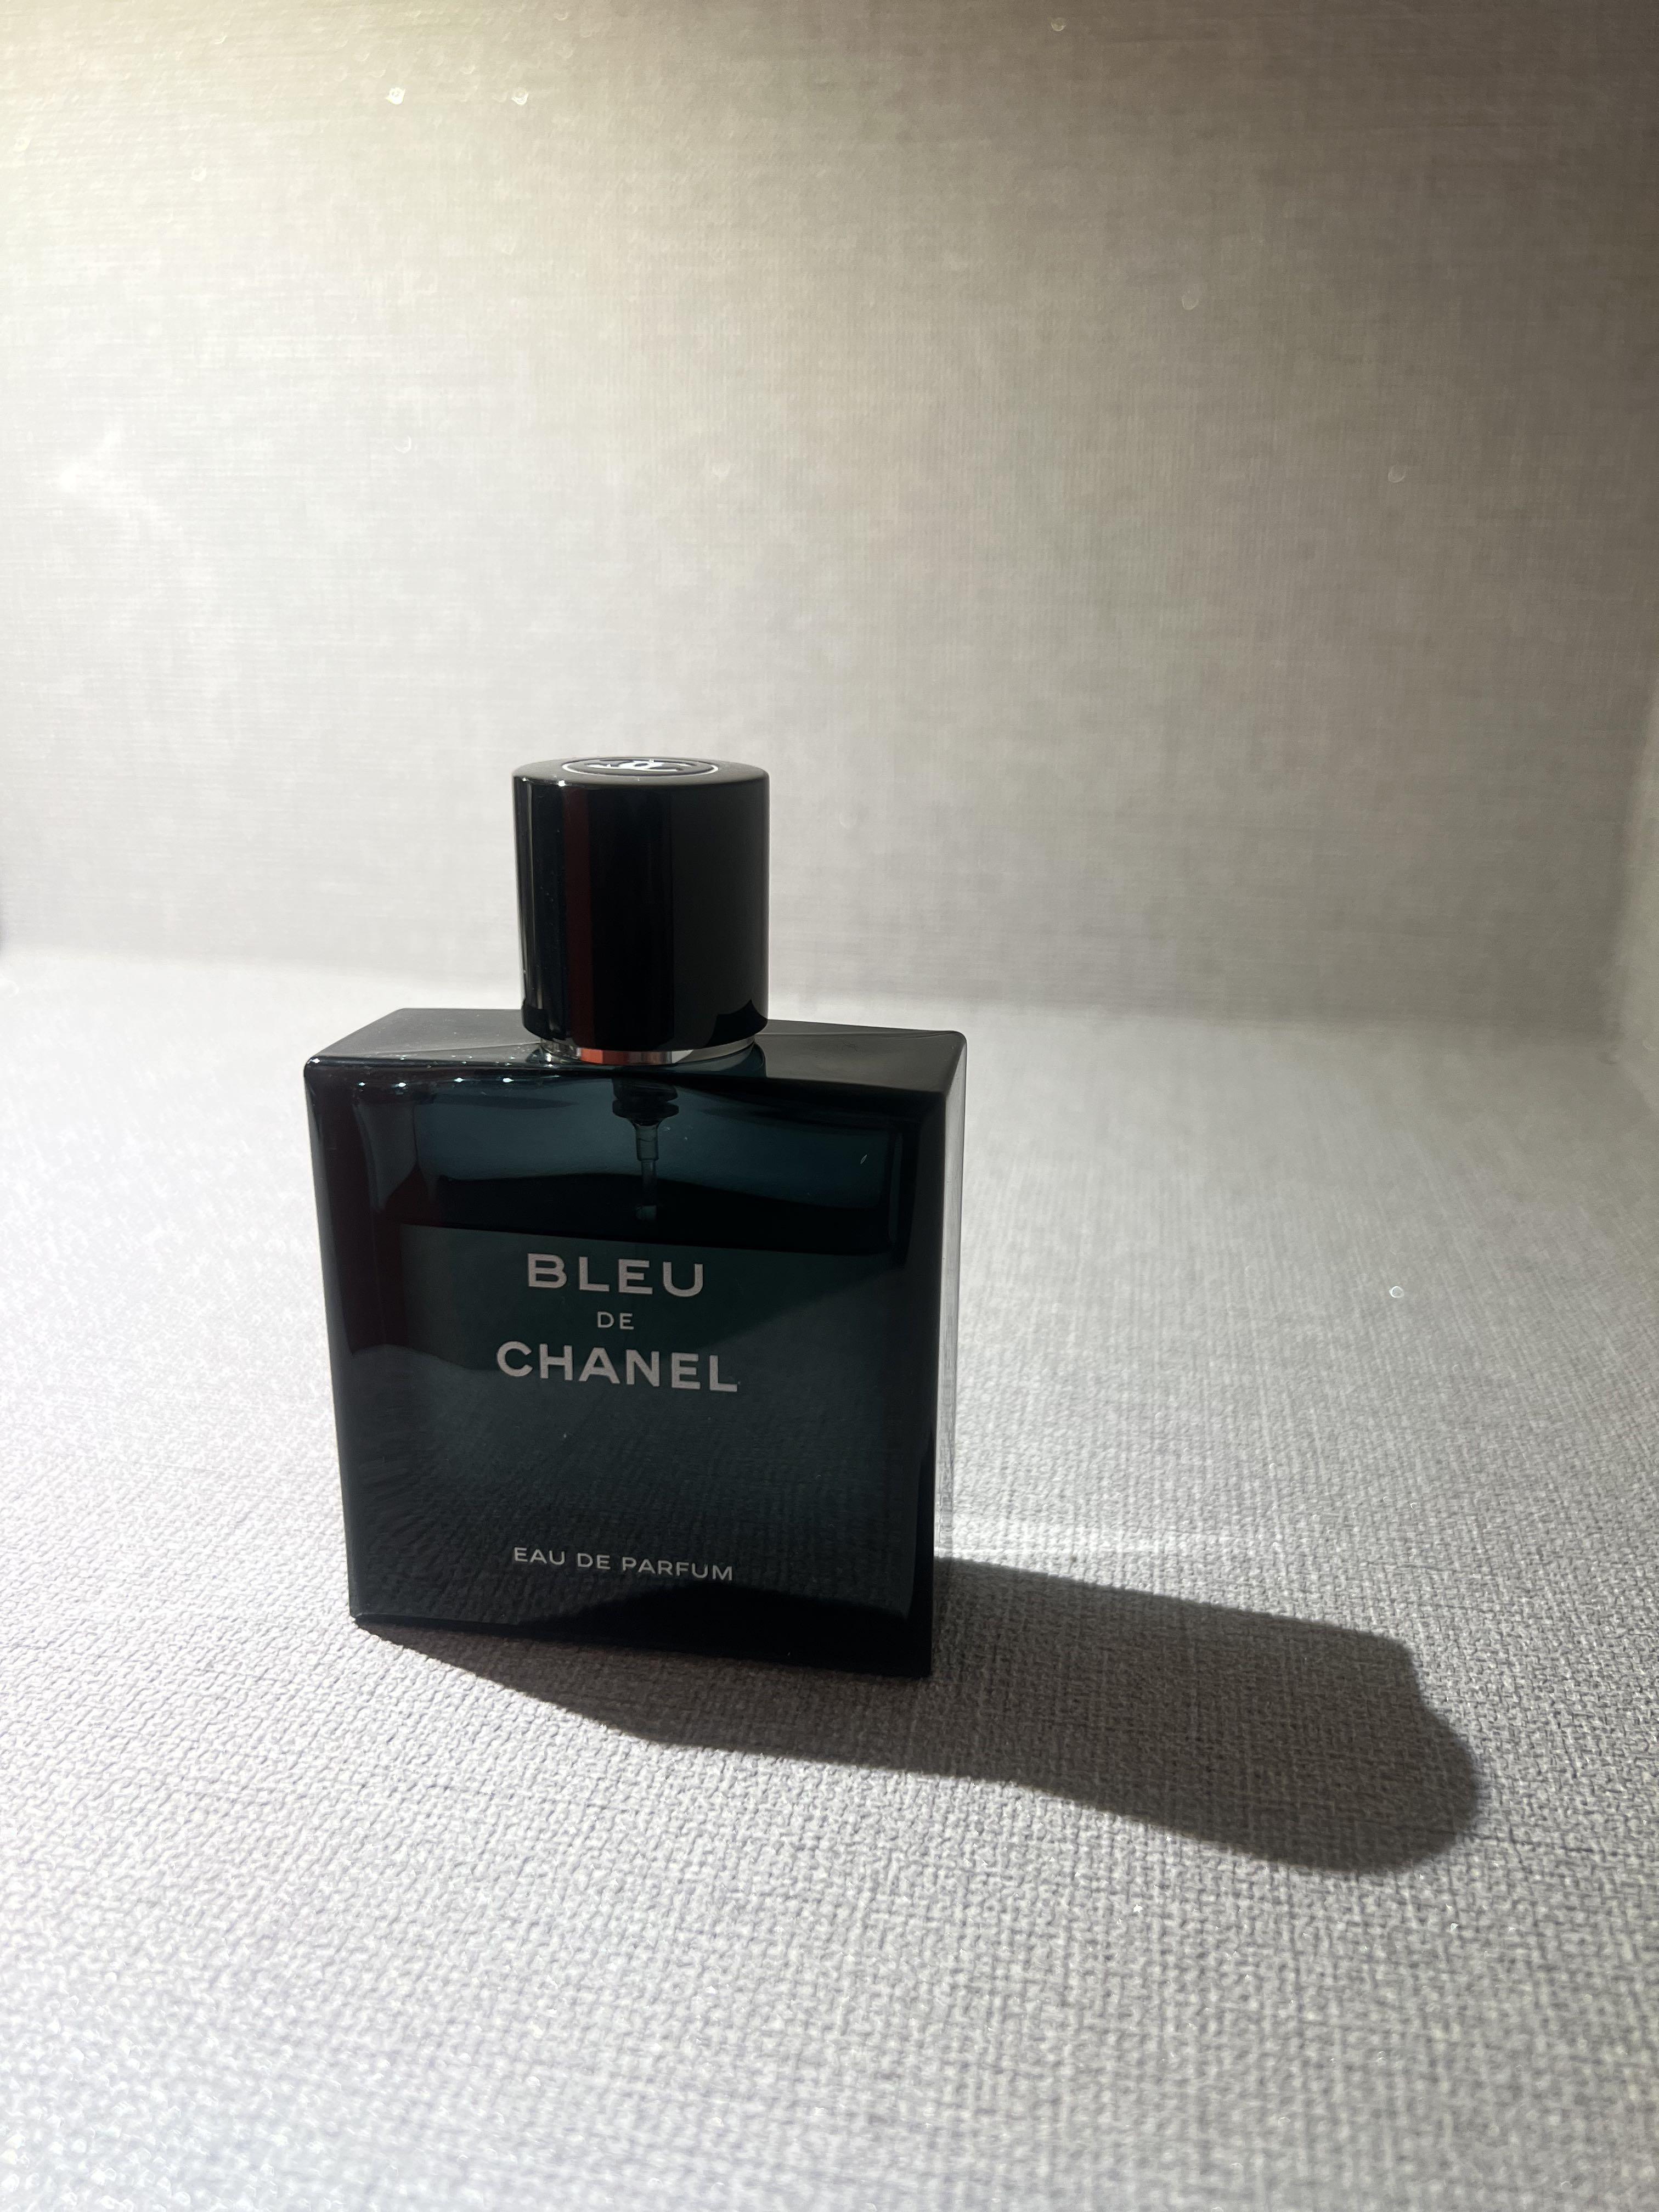 Bleu De Chanel 3.4 oz EAU DE TOILETTE SPRAY (for Men) Scent